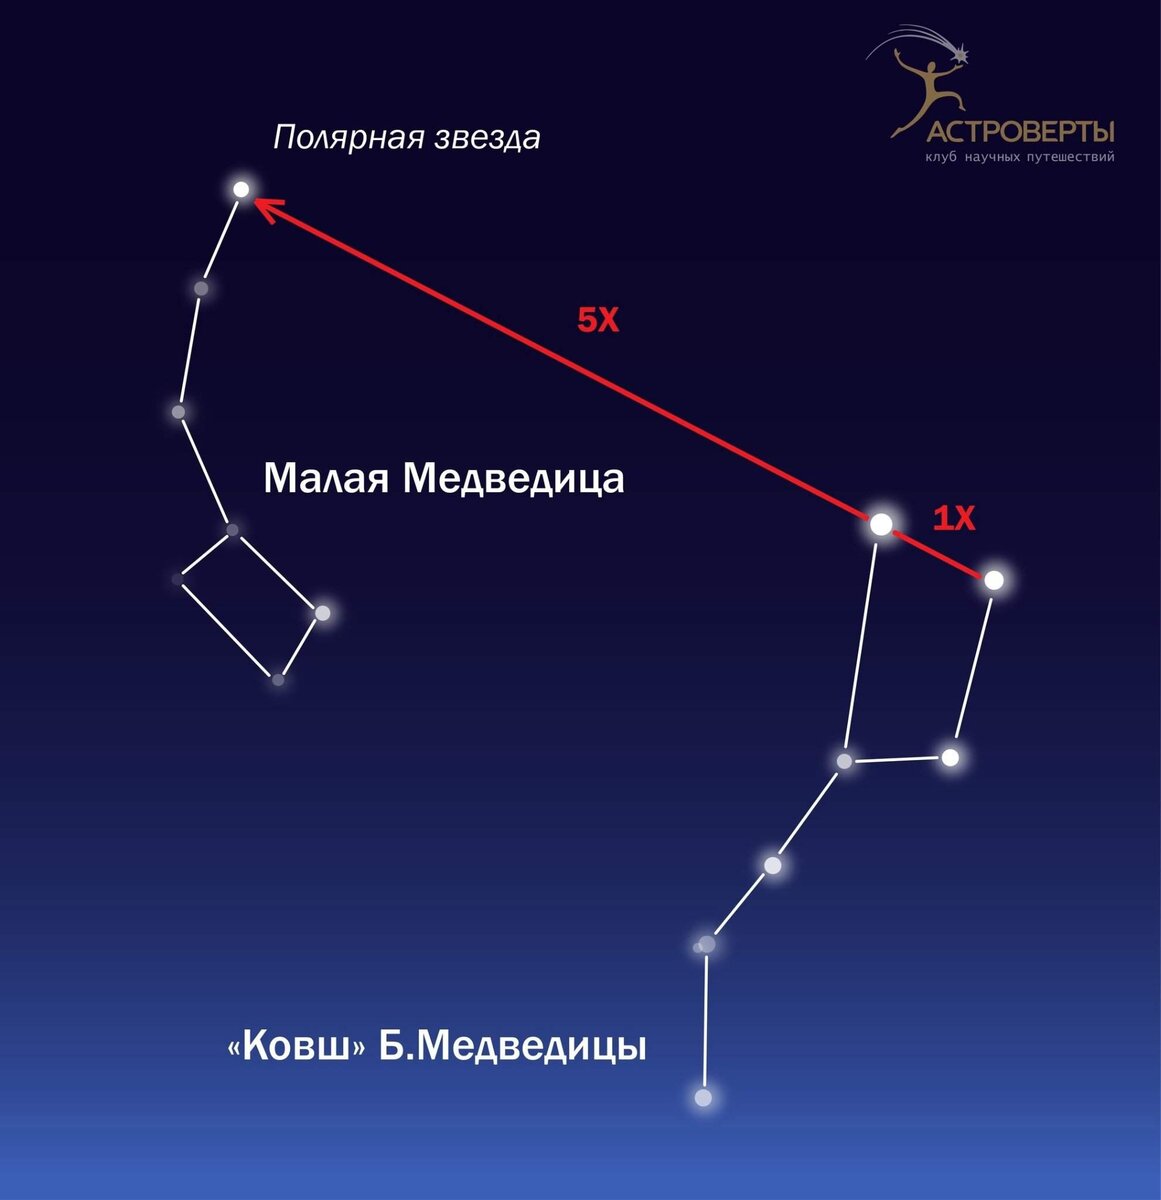 Содержание Ковш Большой медведицы — одно из самых знакомых созвездий на ночном небе. С помощью его звезд можно ориентироваться при ночных походах и наблюдениях звездного неба.